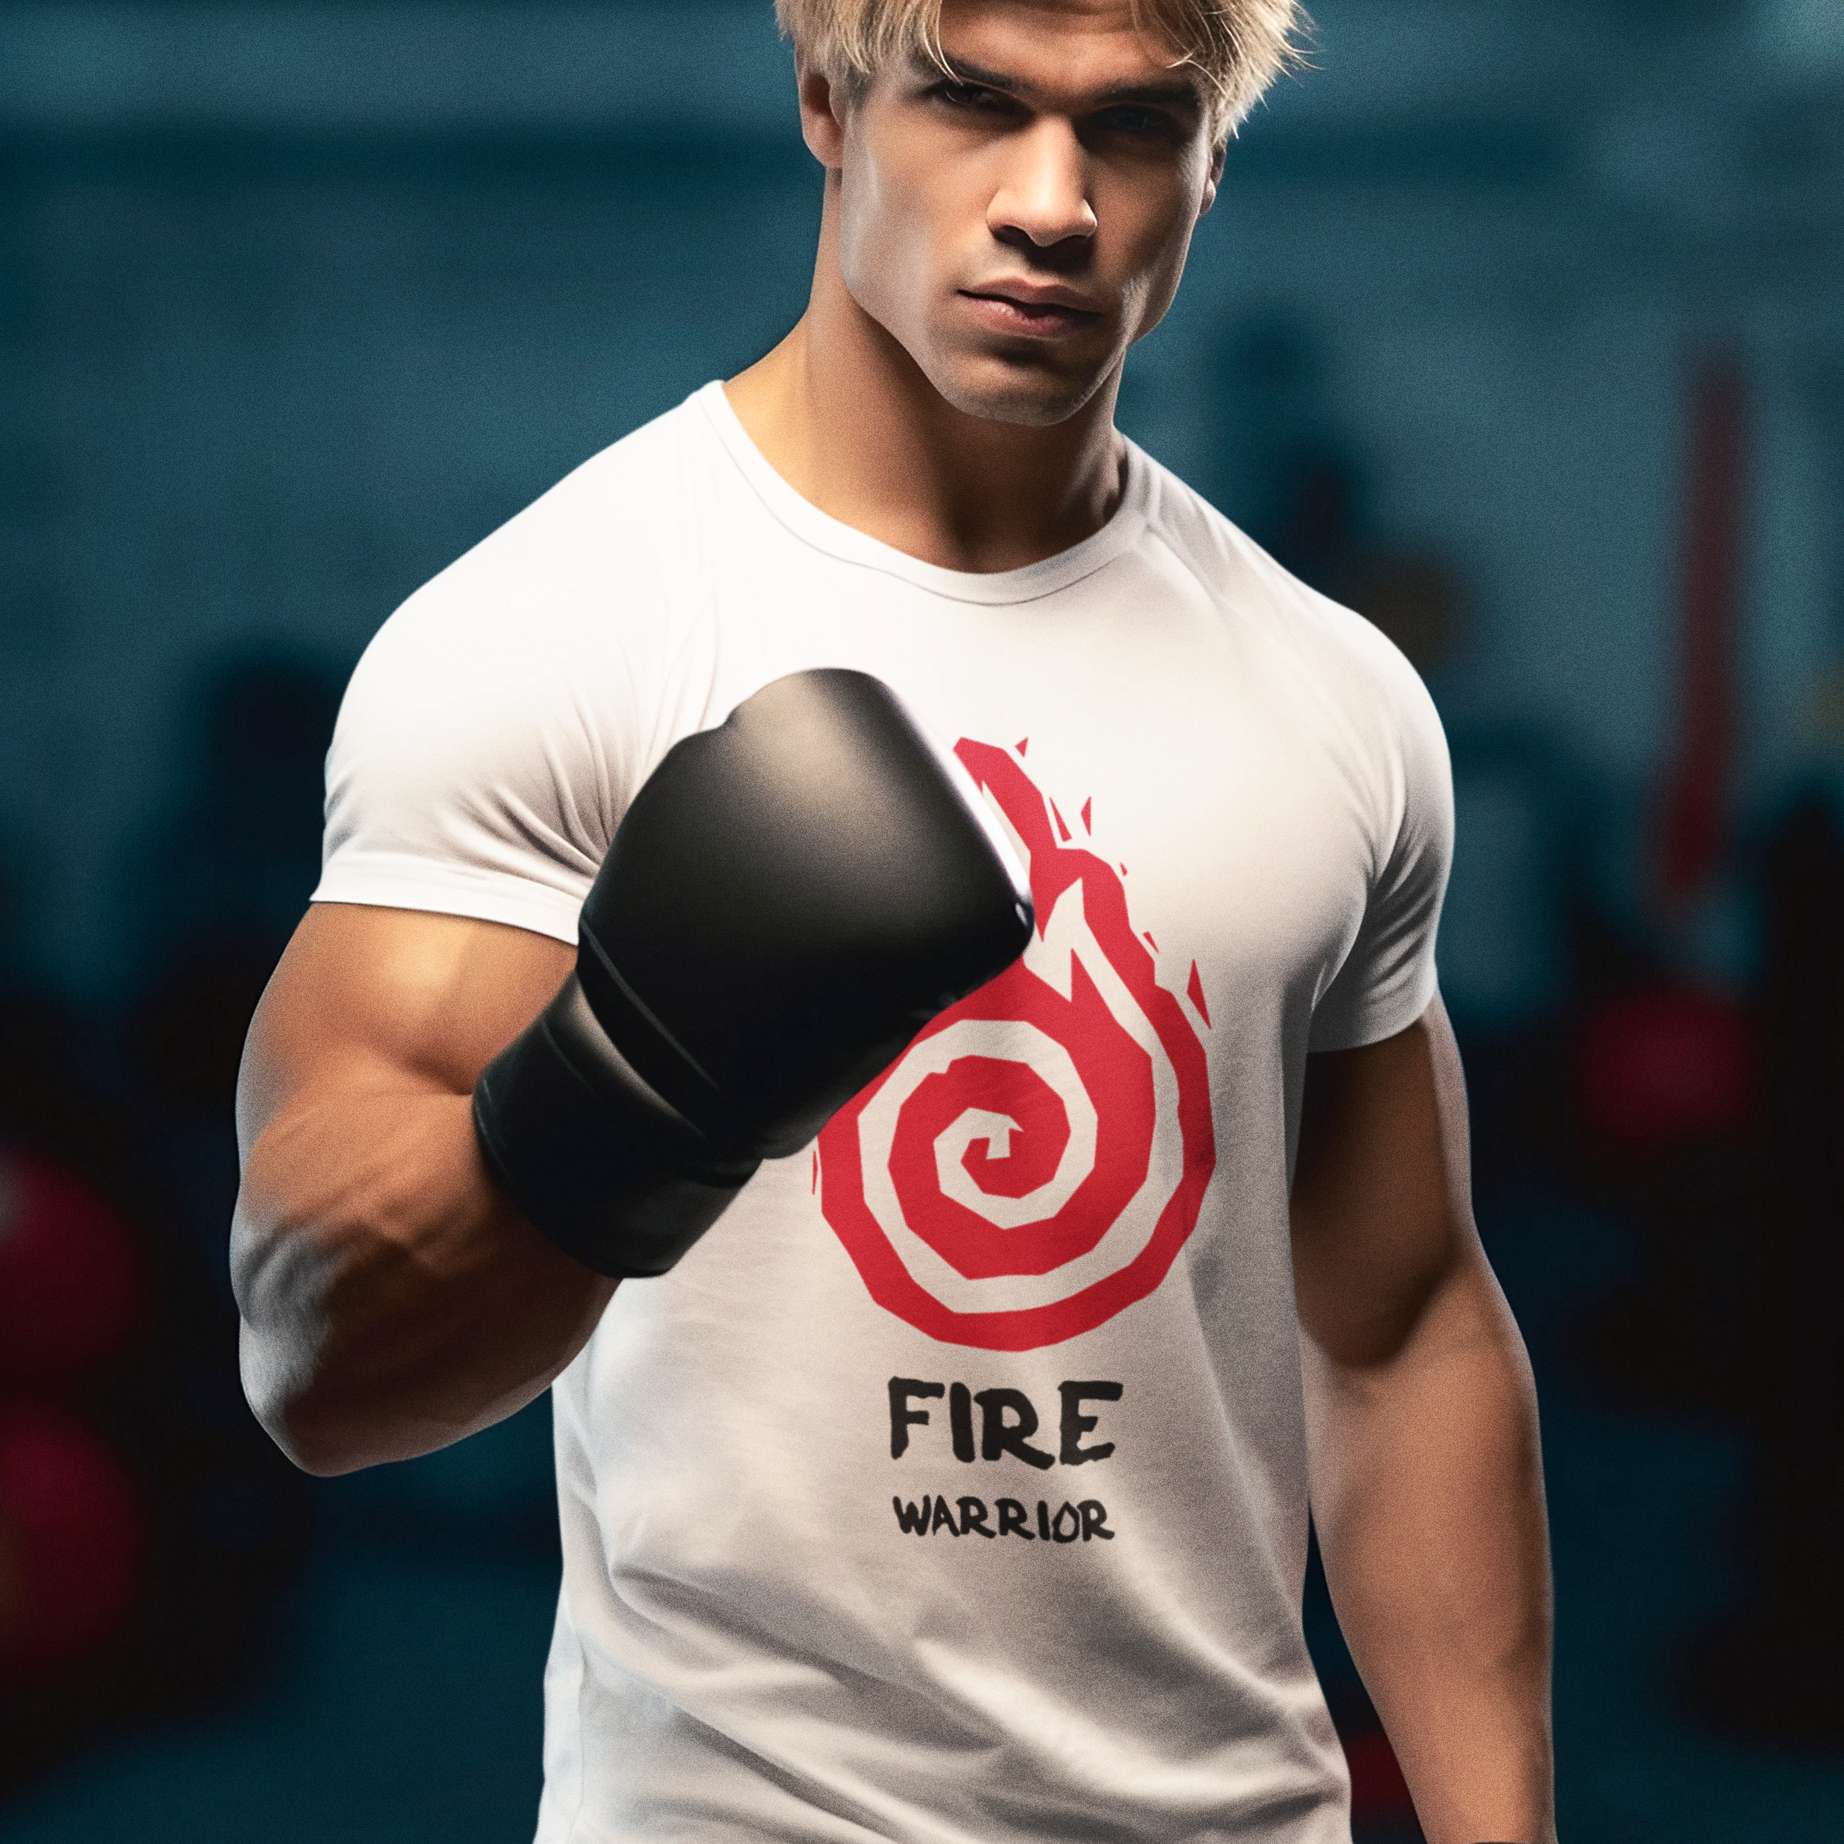 “Fire Warrior” Men Premium Tshirts 100% Cotton